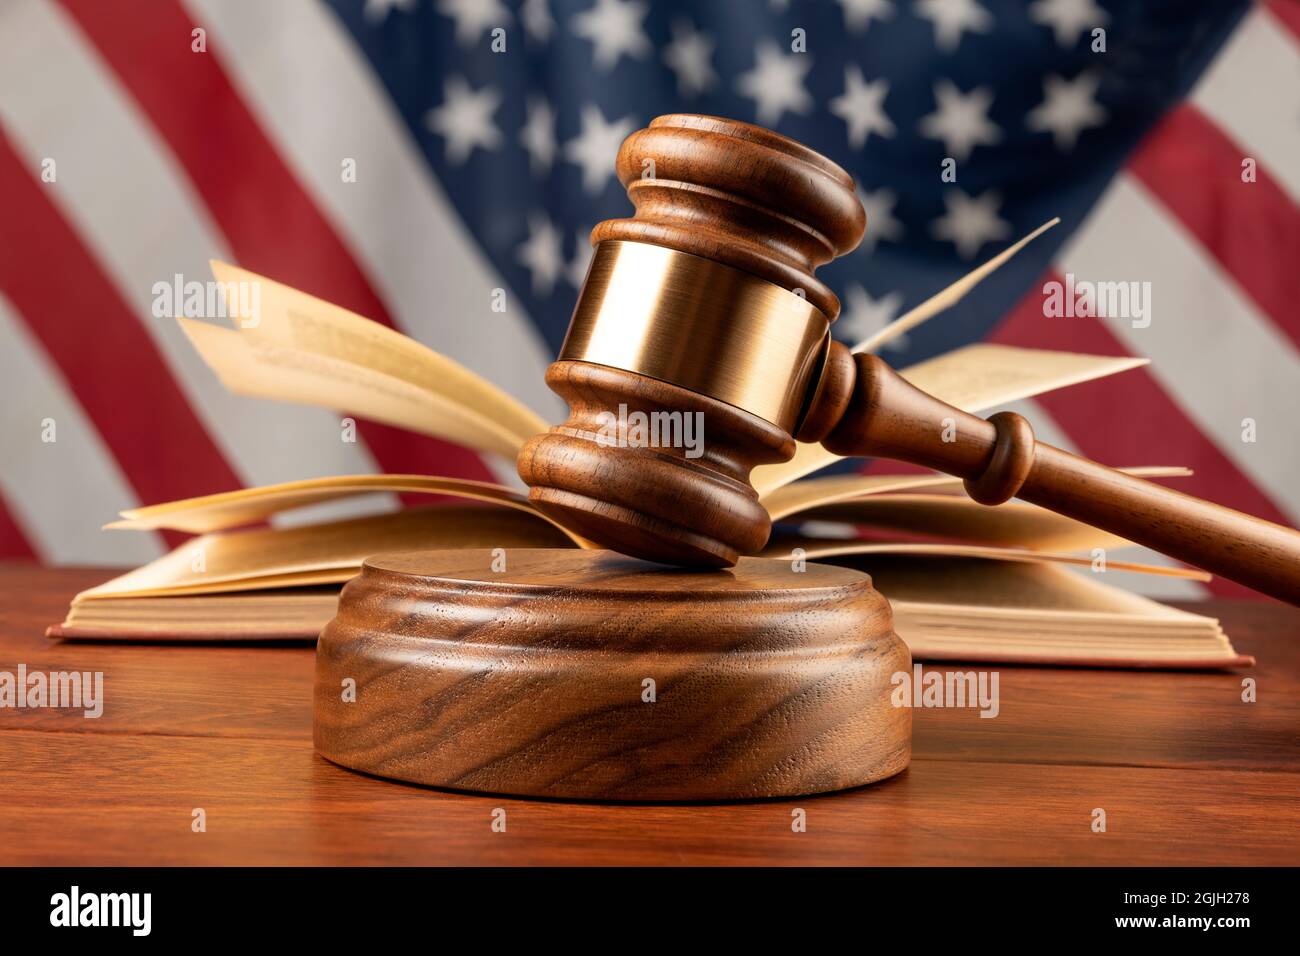 Un gaval et un bloc de bois reposent sur le bureau d'un juge avec un livre et un drapeau américain. Banque D'Images